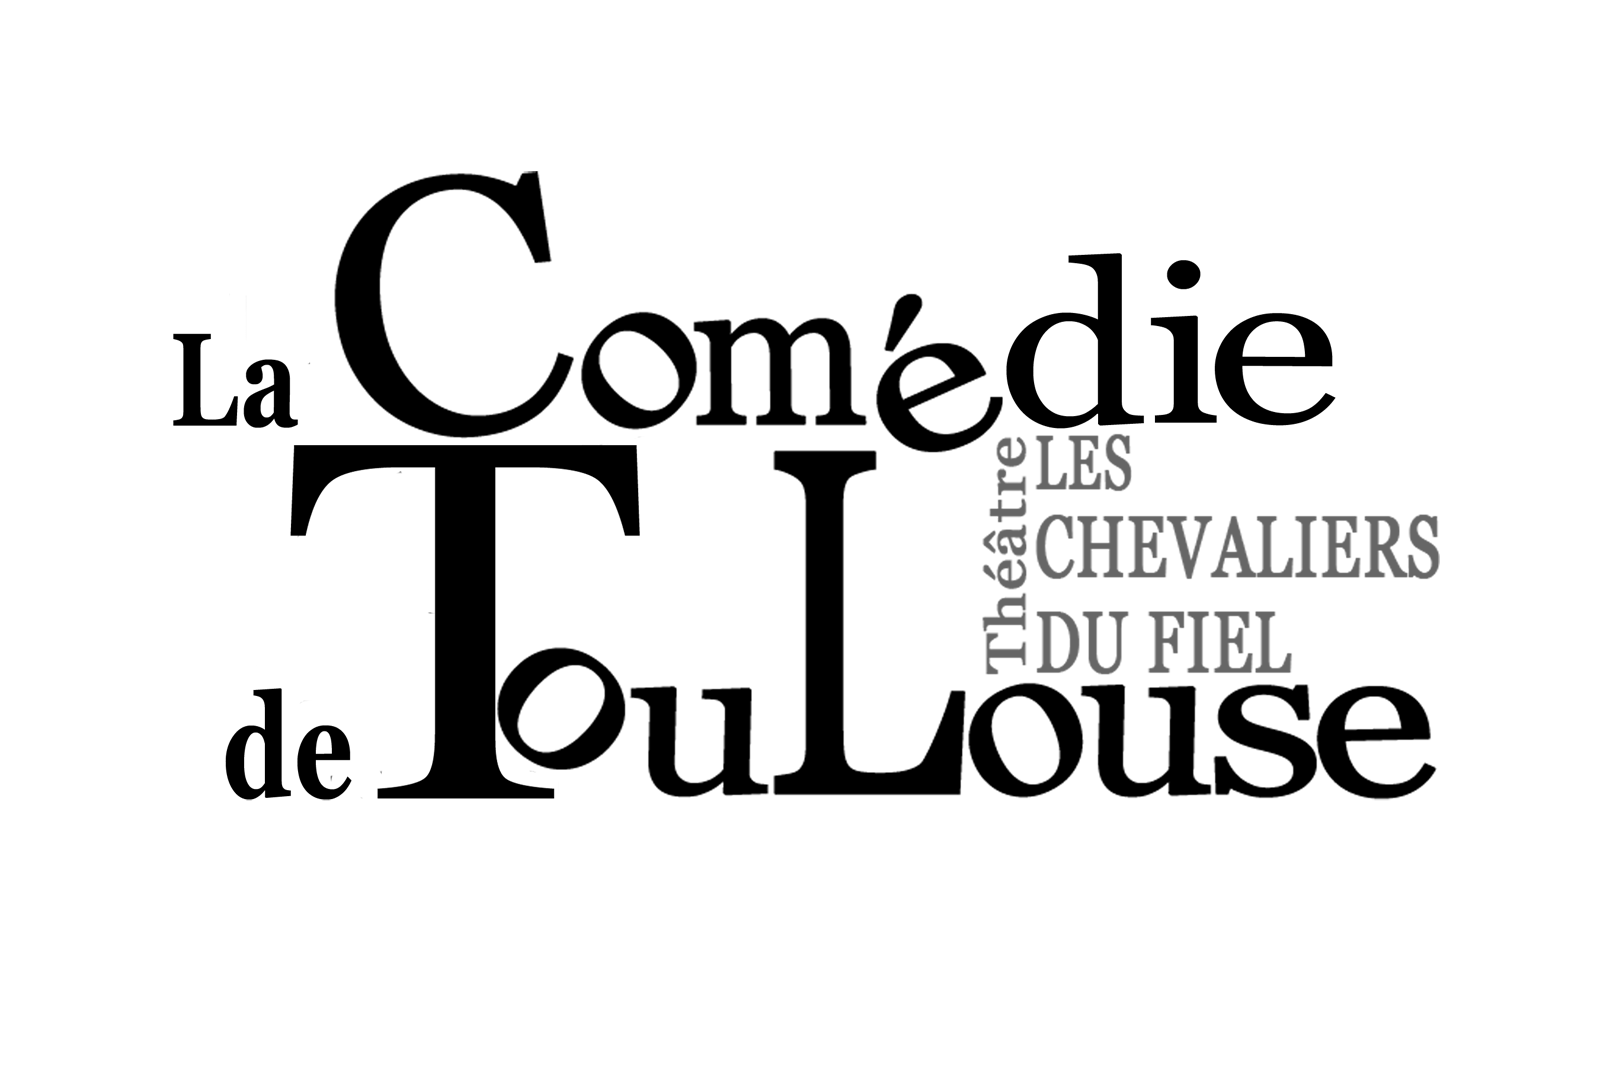 La Comédie de Toulouse - DR